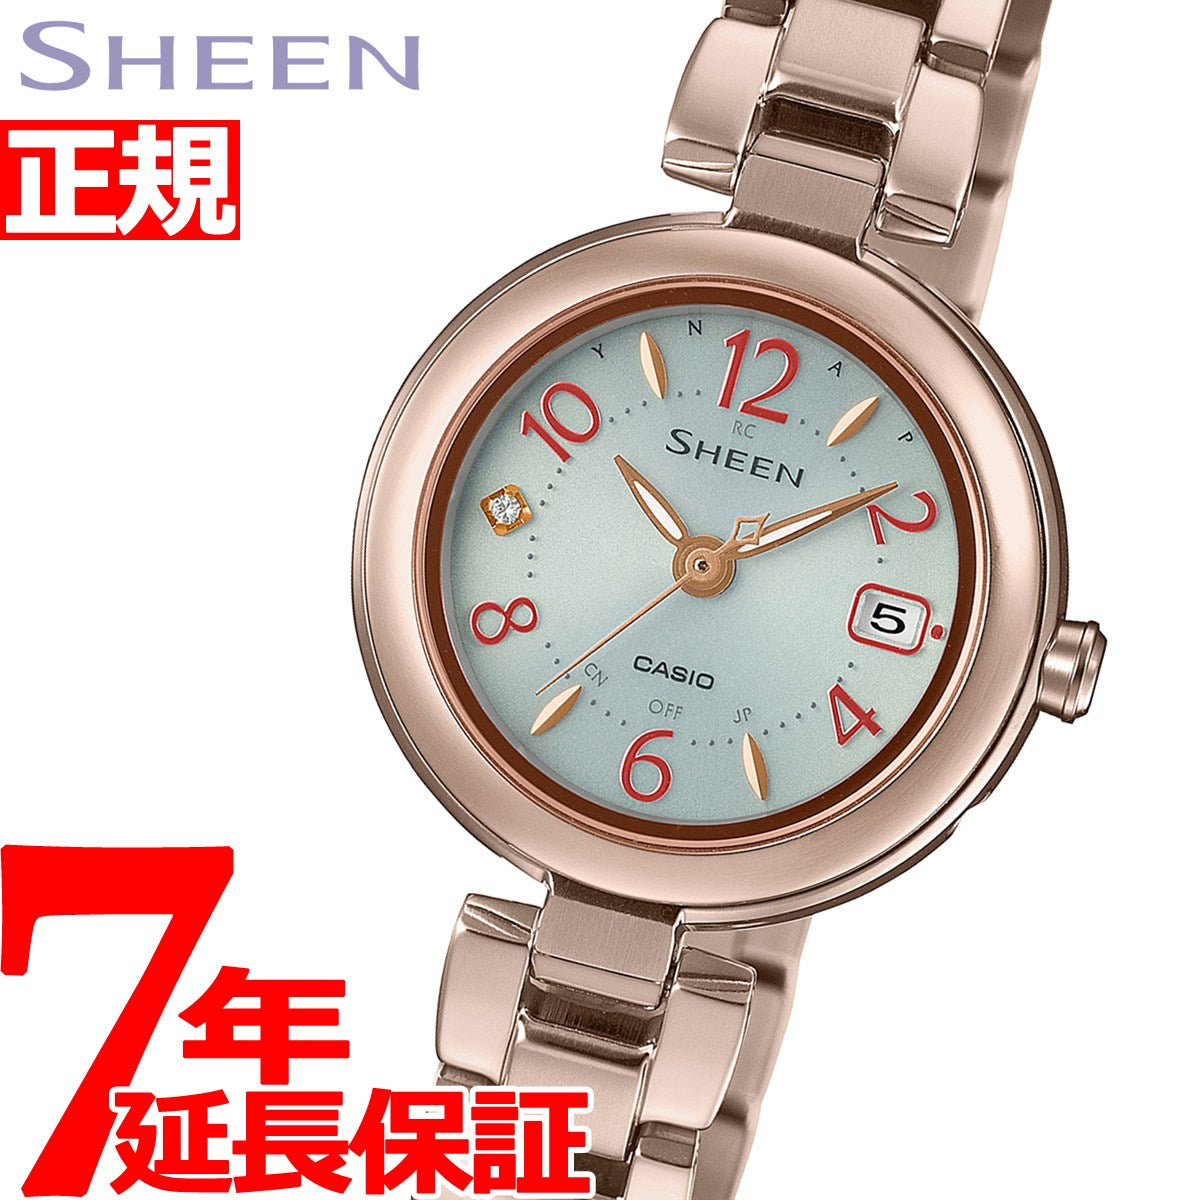 カシオ シーン CASIO SHEEN 電波 ソーラー 電波時計 SHW-7100TCG-7AJF 腕時計 レディース チタン